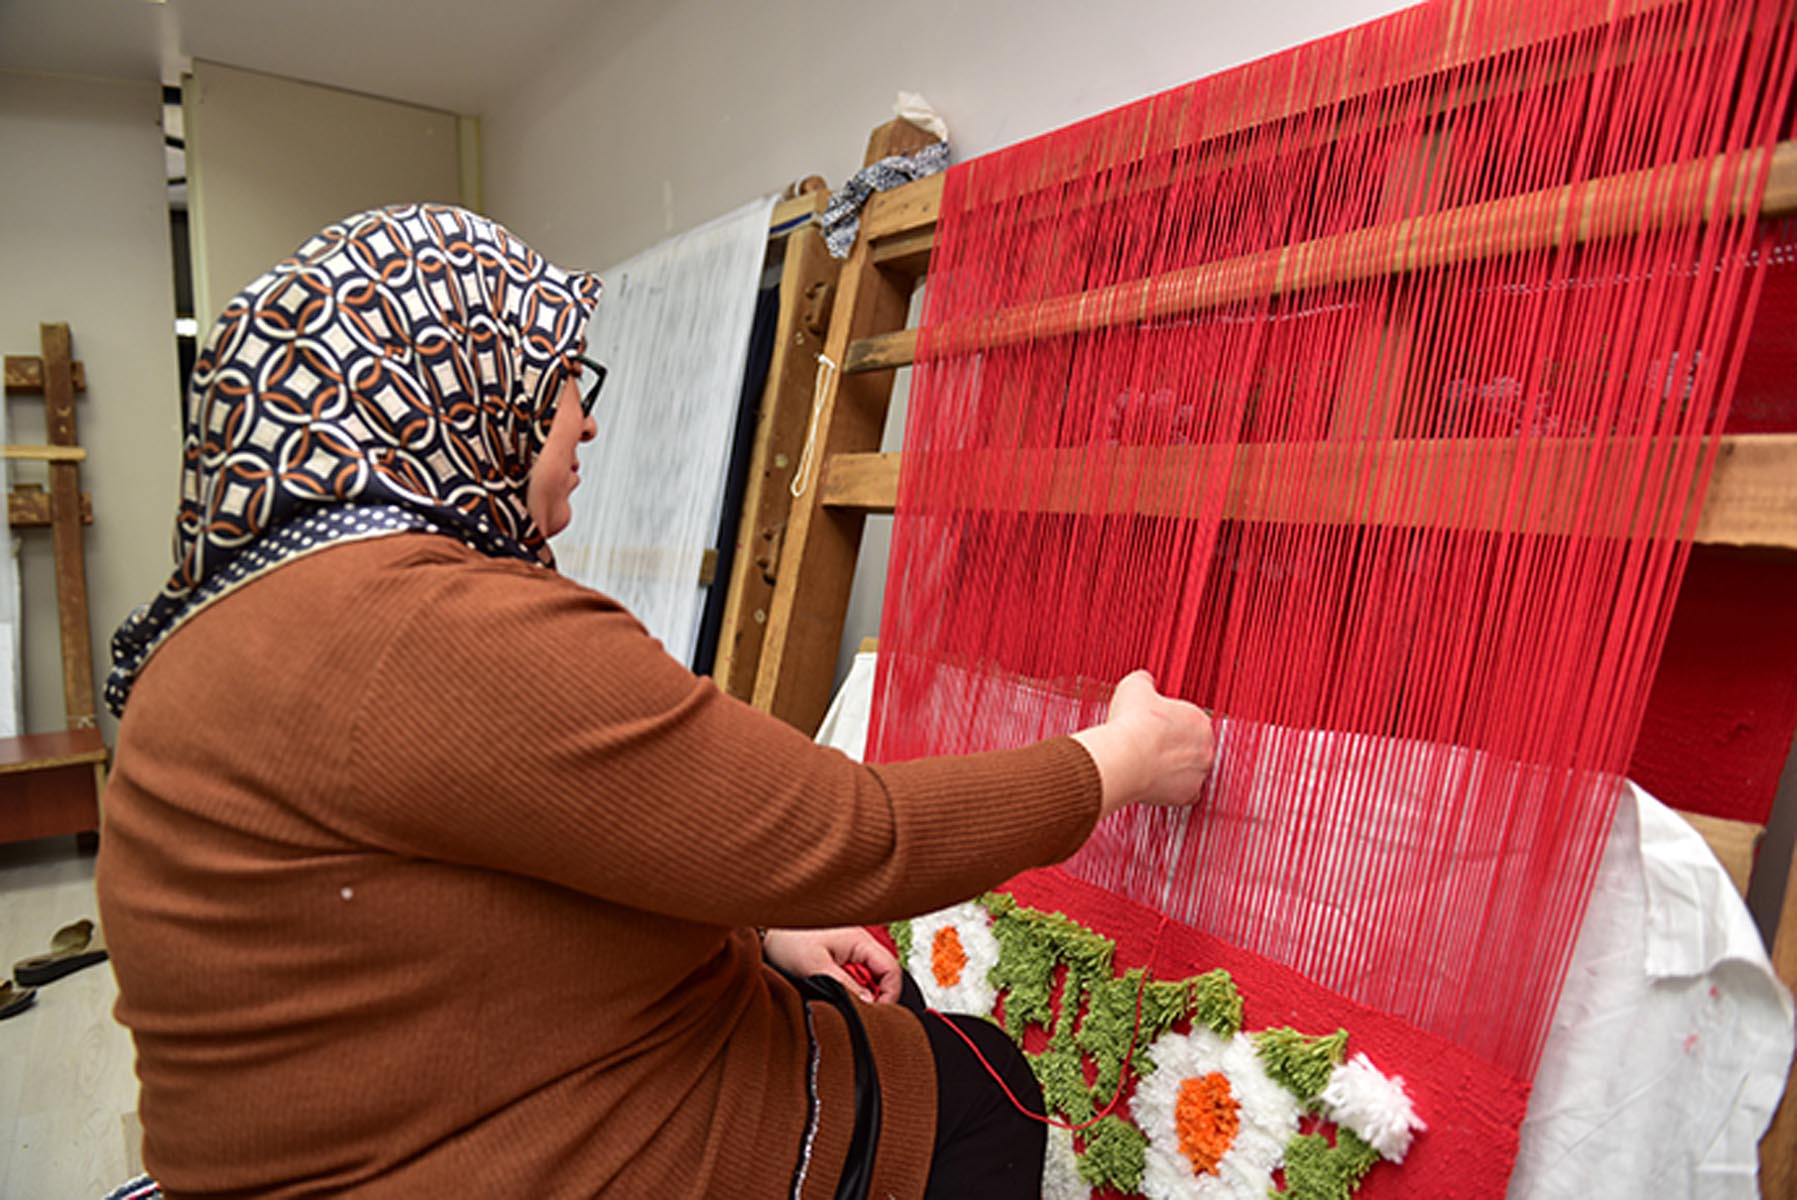 İyilik Atölyelerinde el emeği üreten kadınlar ev ekonomilerine katkı sağlıyor